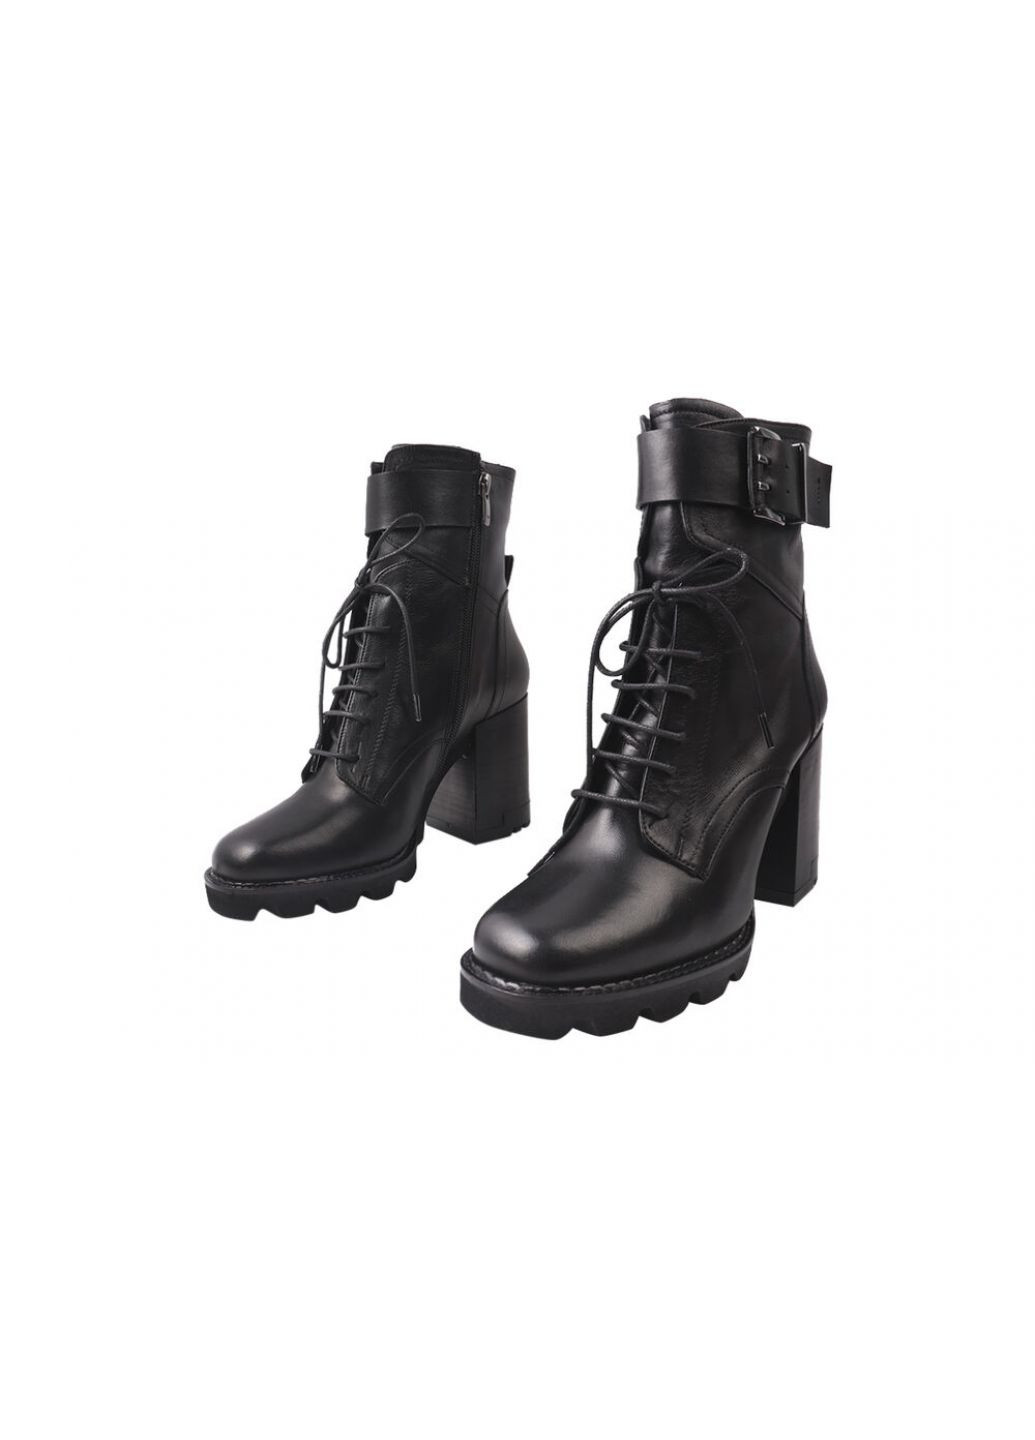 Черные ботильоны женские из натуральной кожи,высокие,на большом каблуке,черные,турция Tucino 535-20DH